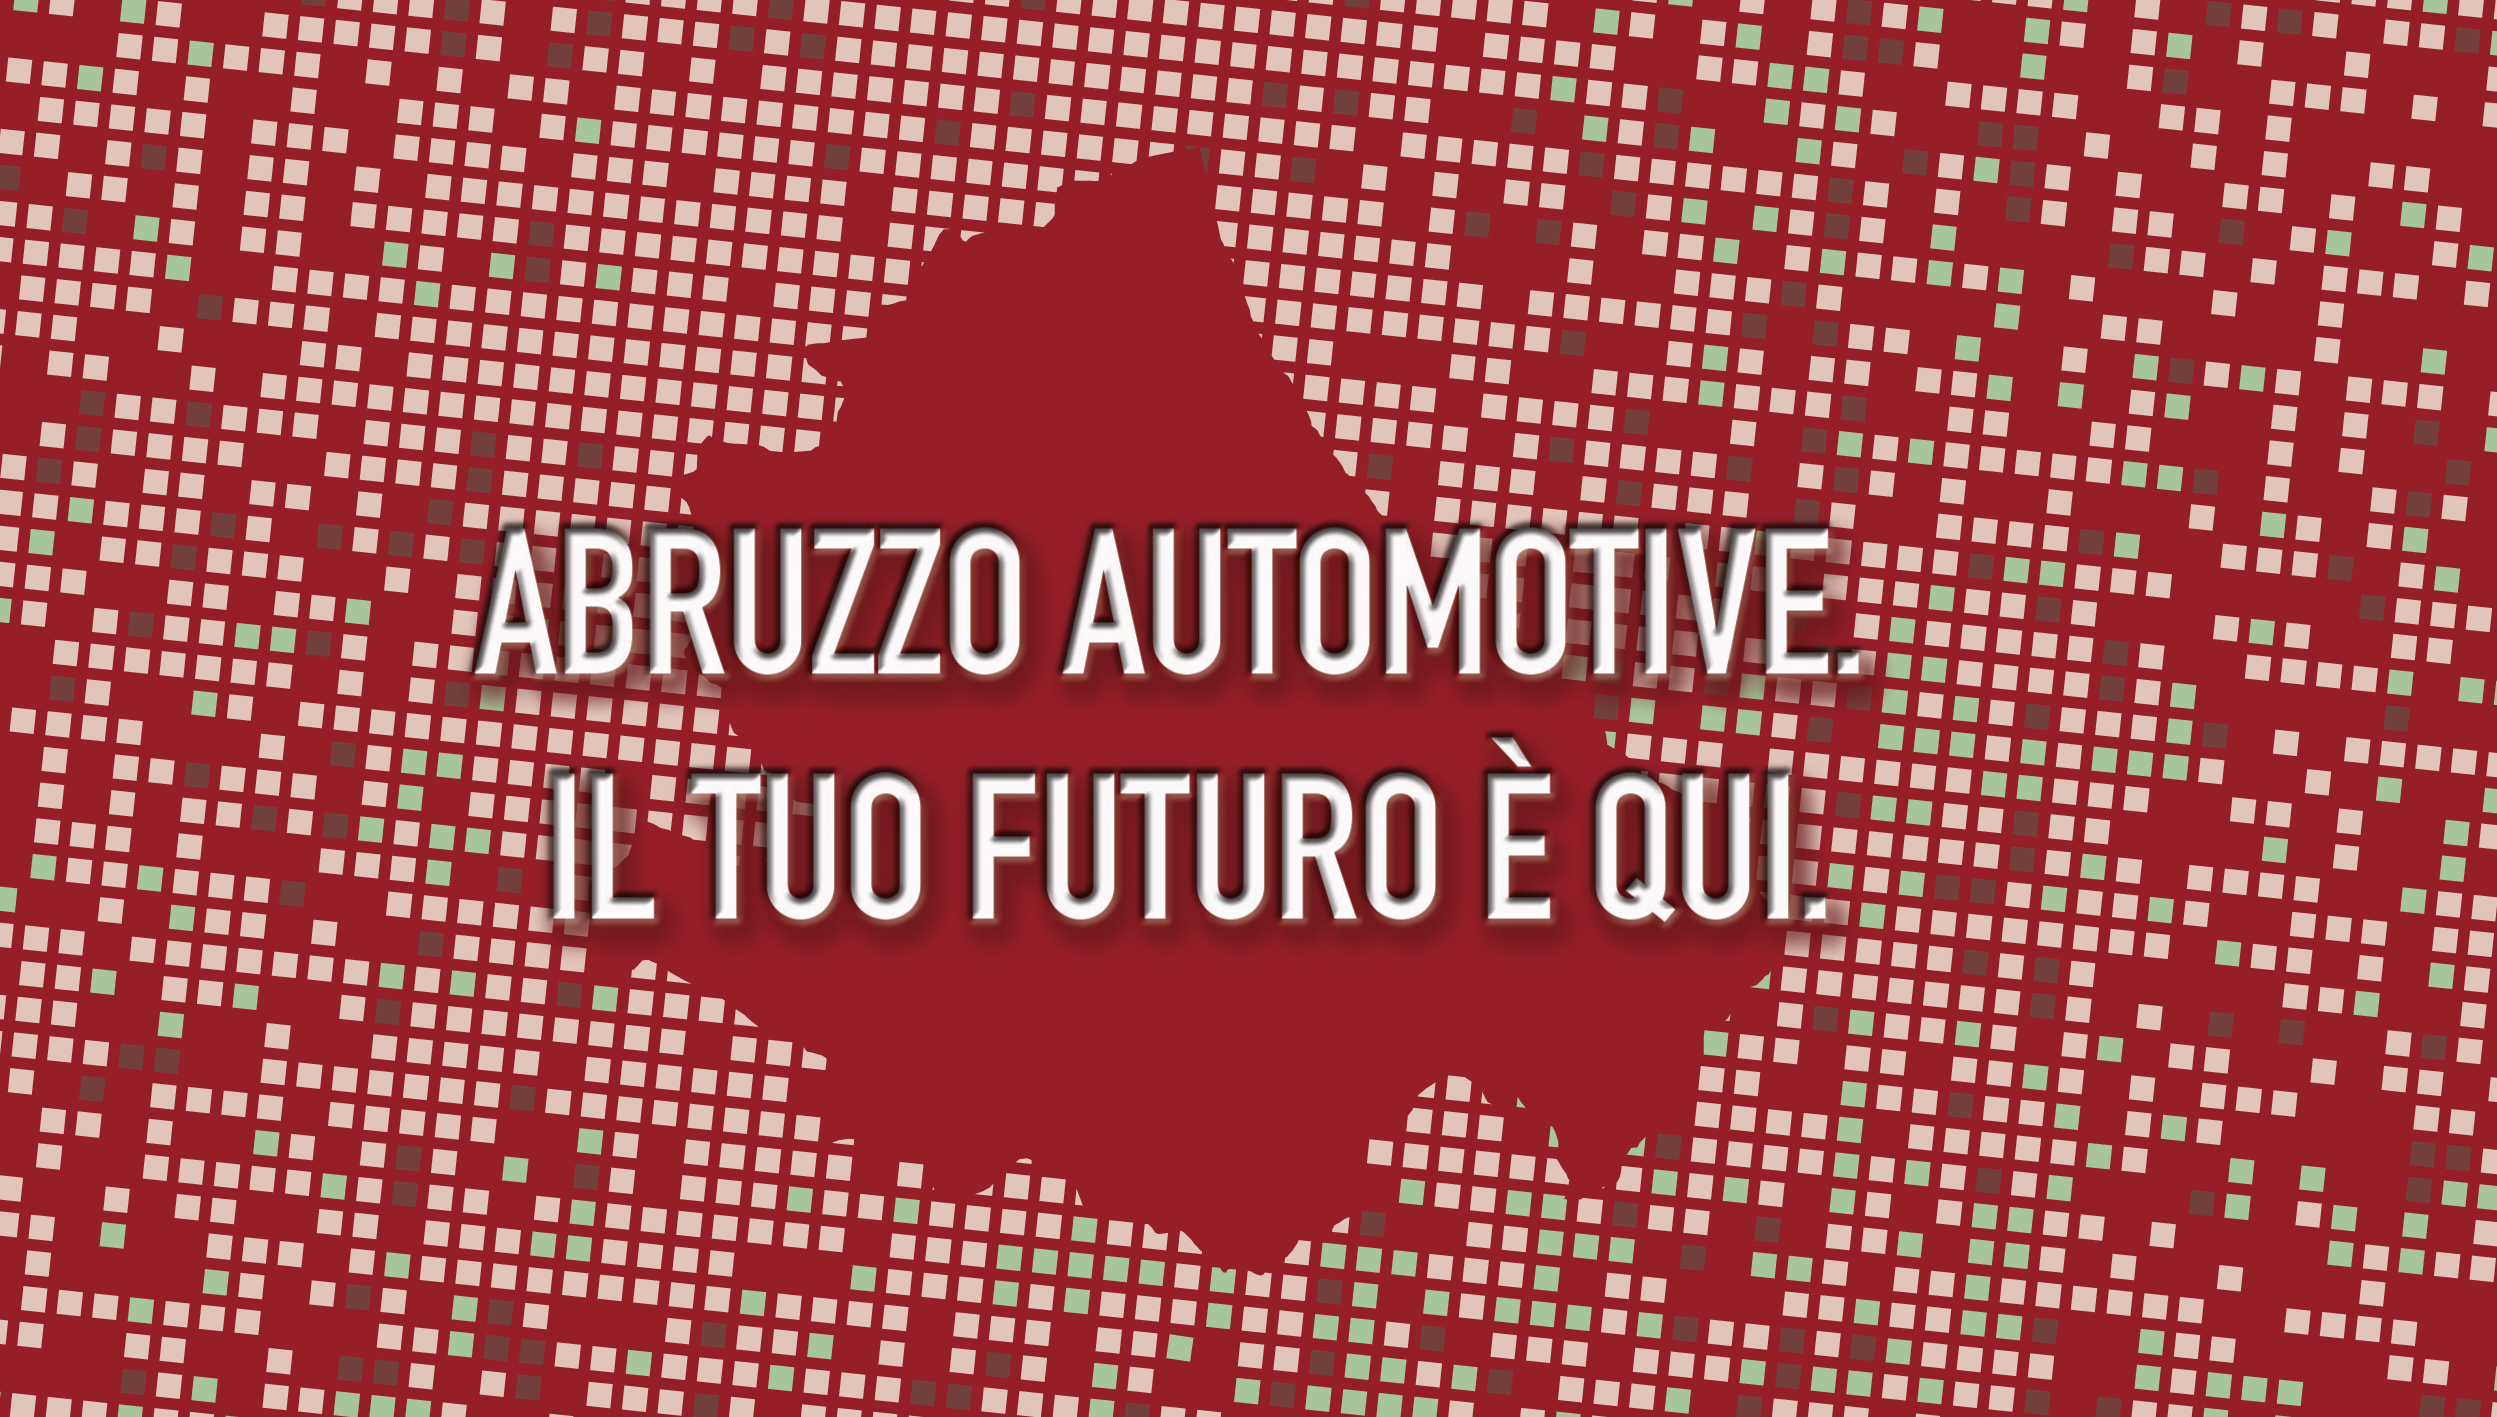 Automotive: la Regione Abruzzo scrive a Draghi e Giorgetti per chiedere più incentivi